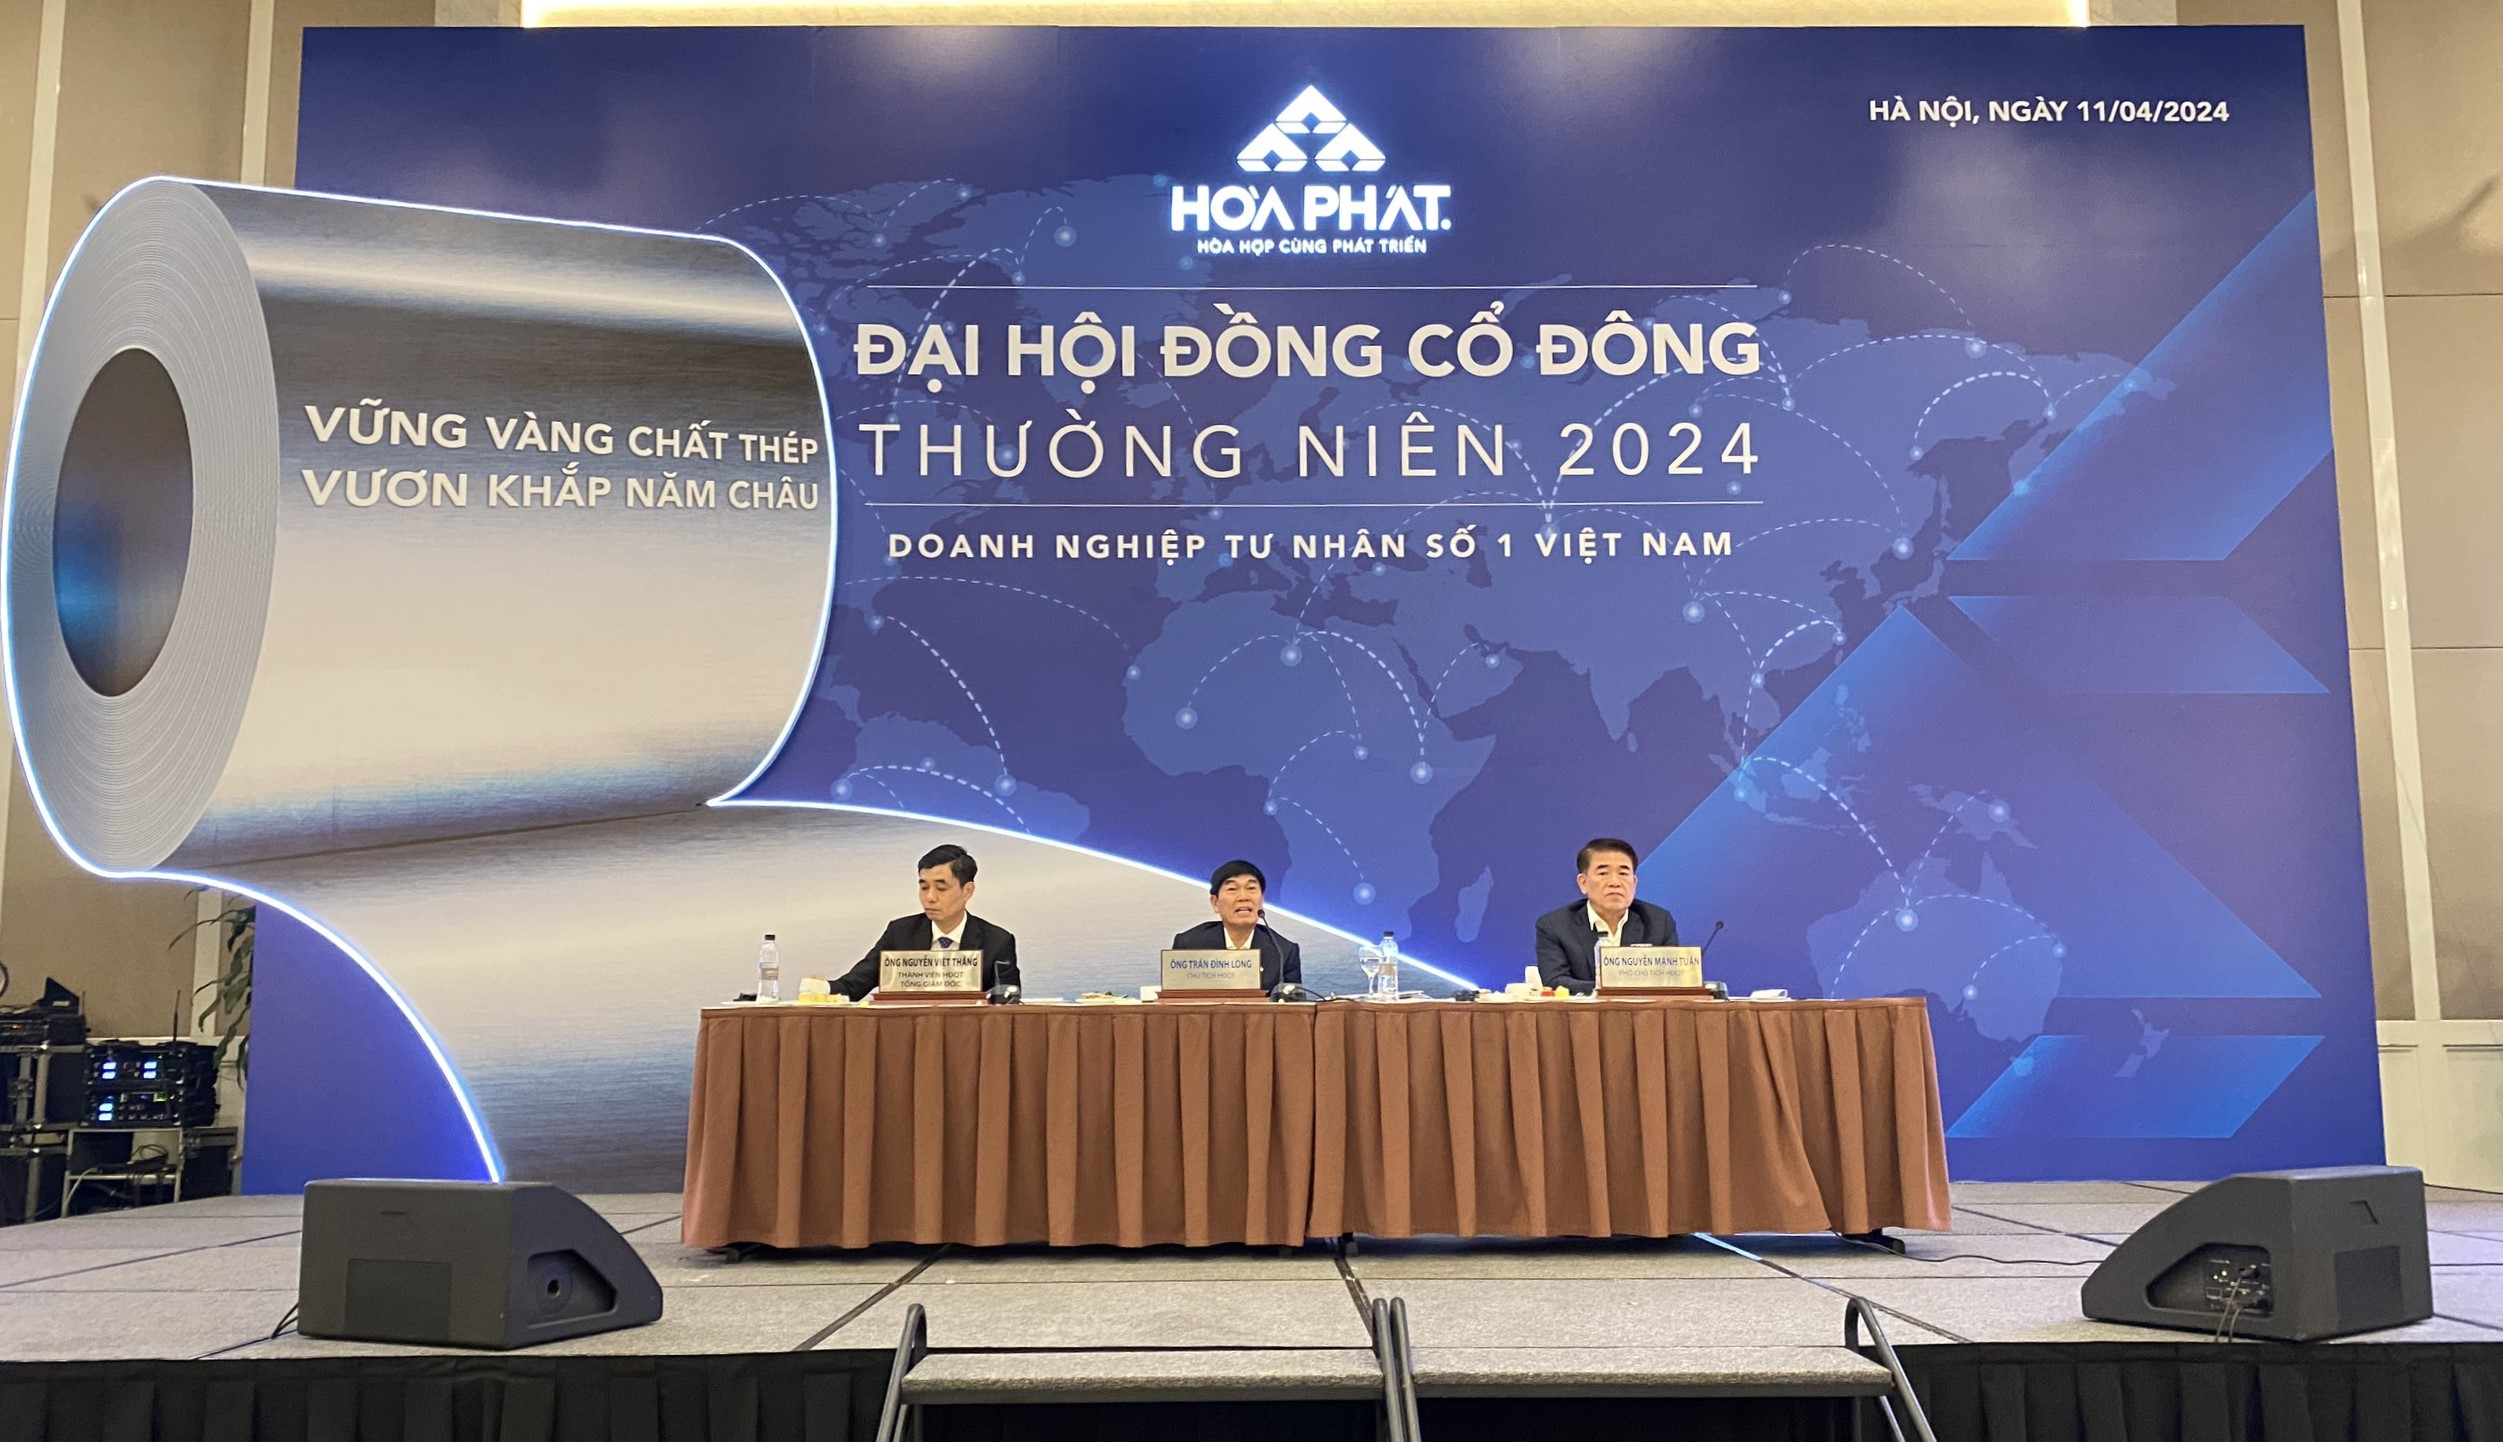 Chủ tịch Hòa Phát Trần Đình Long trao đổi với cổ đông tại AGM 2024